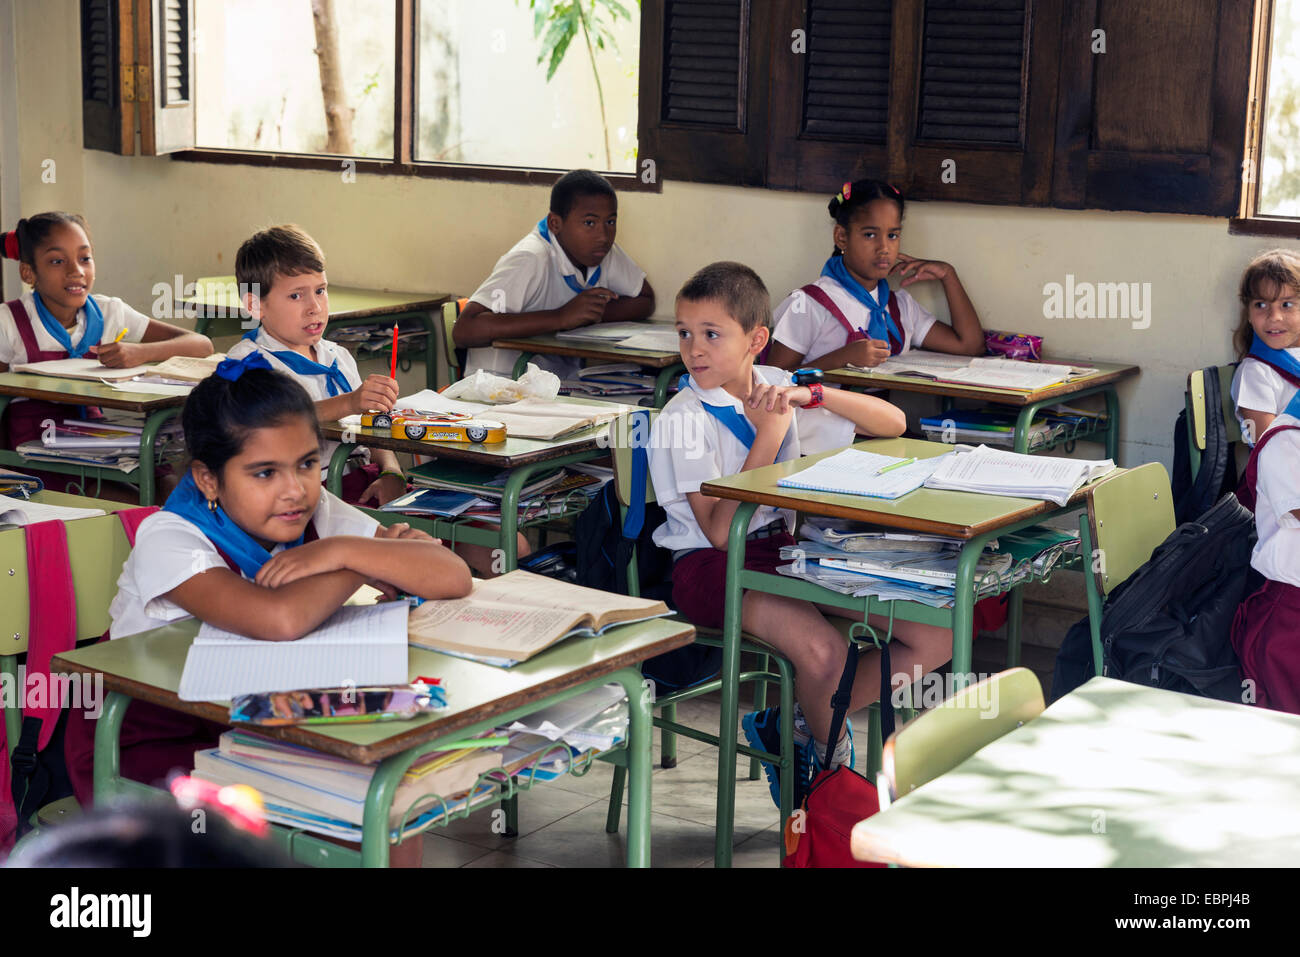 La Habana, Cuba - 5 de mayo de 2014: el grupo de escolares cubanos de edad primaria vestidos en uniforme sentado en una escuela de Havan Foto de stock